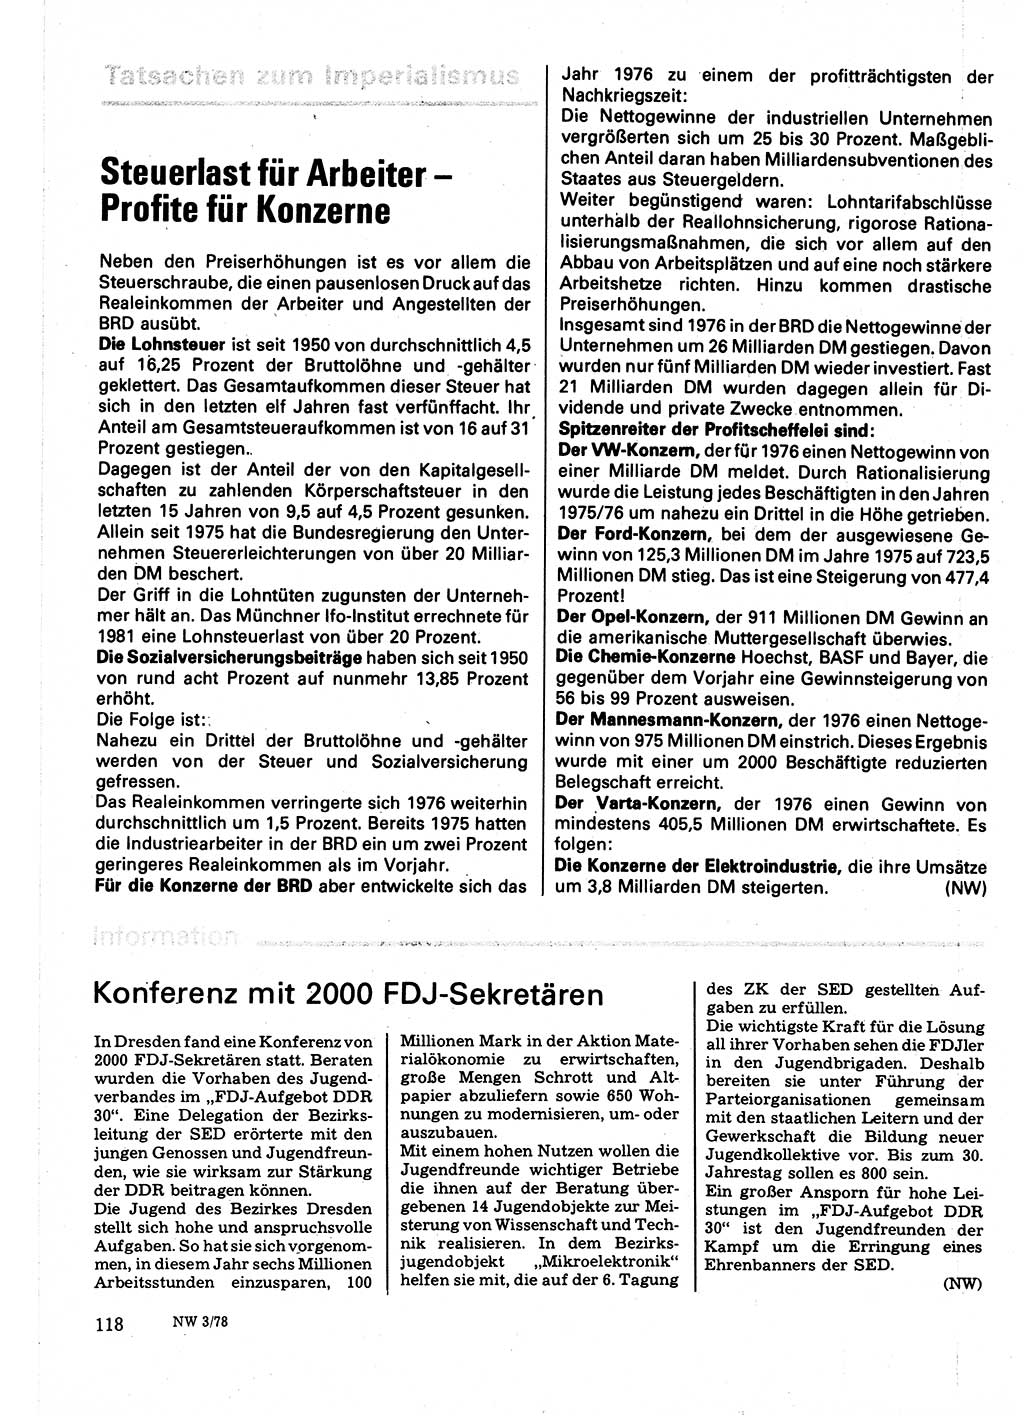 Neuer Weg (NW), Organ des Zentralkomitees (ZK) der SED (Sozialistische Einheitspartei Deutschlands) für Fragen des Parteilebens, 33. Jahrgang [Deutsche Demokratische Republik (DDR)] 1978, Seite 118 (NW ZK SED DDR 1978, S. 118)